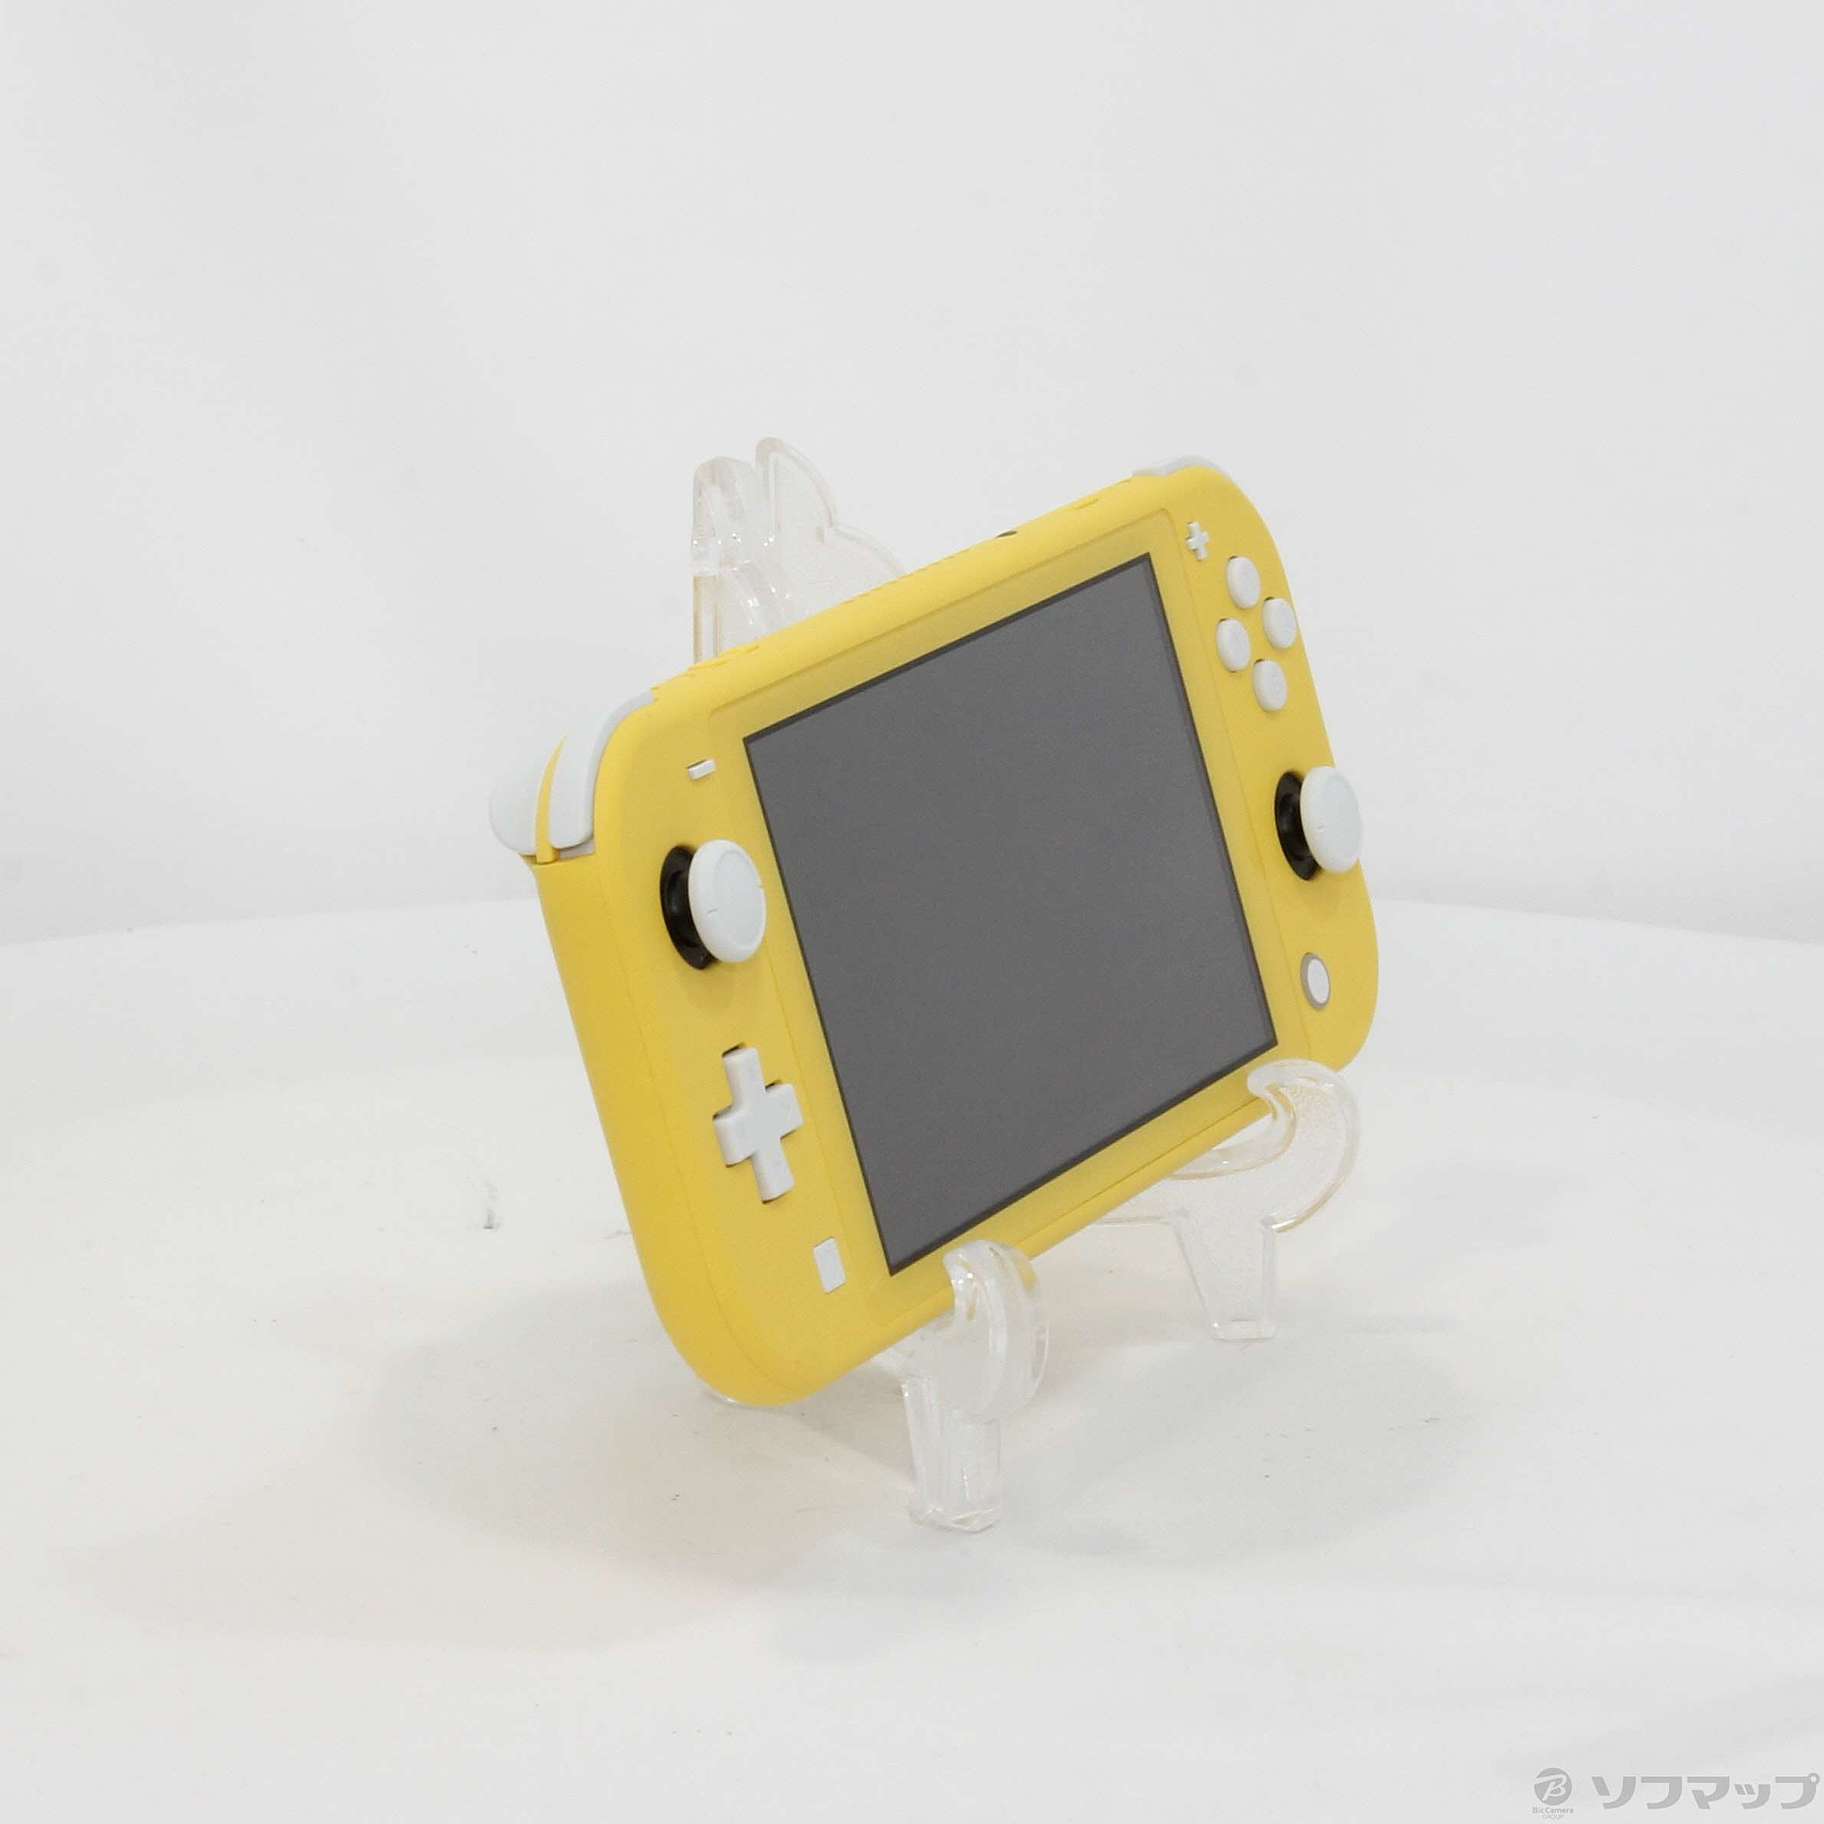 中古】セール対象品 Nintendo Switch Lite イエロー ◇04/06(水)値下げ